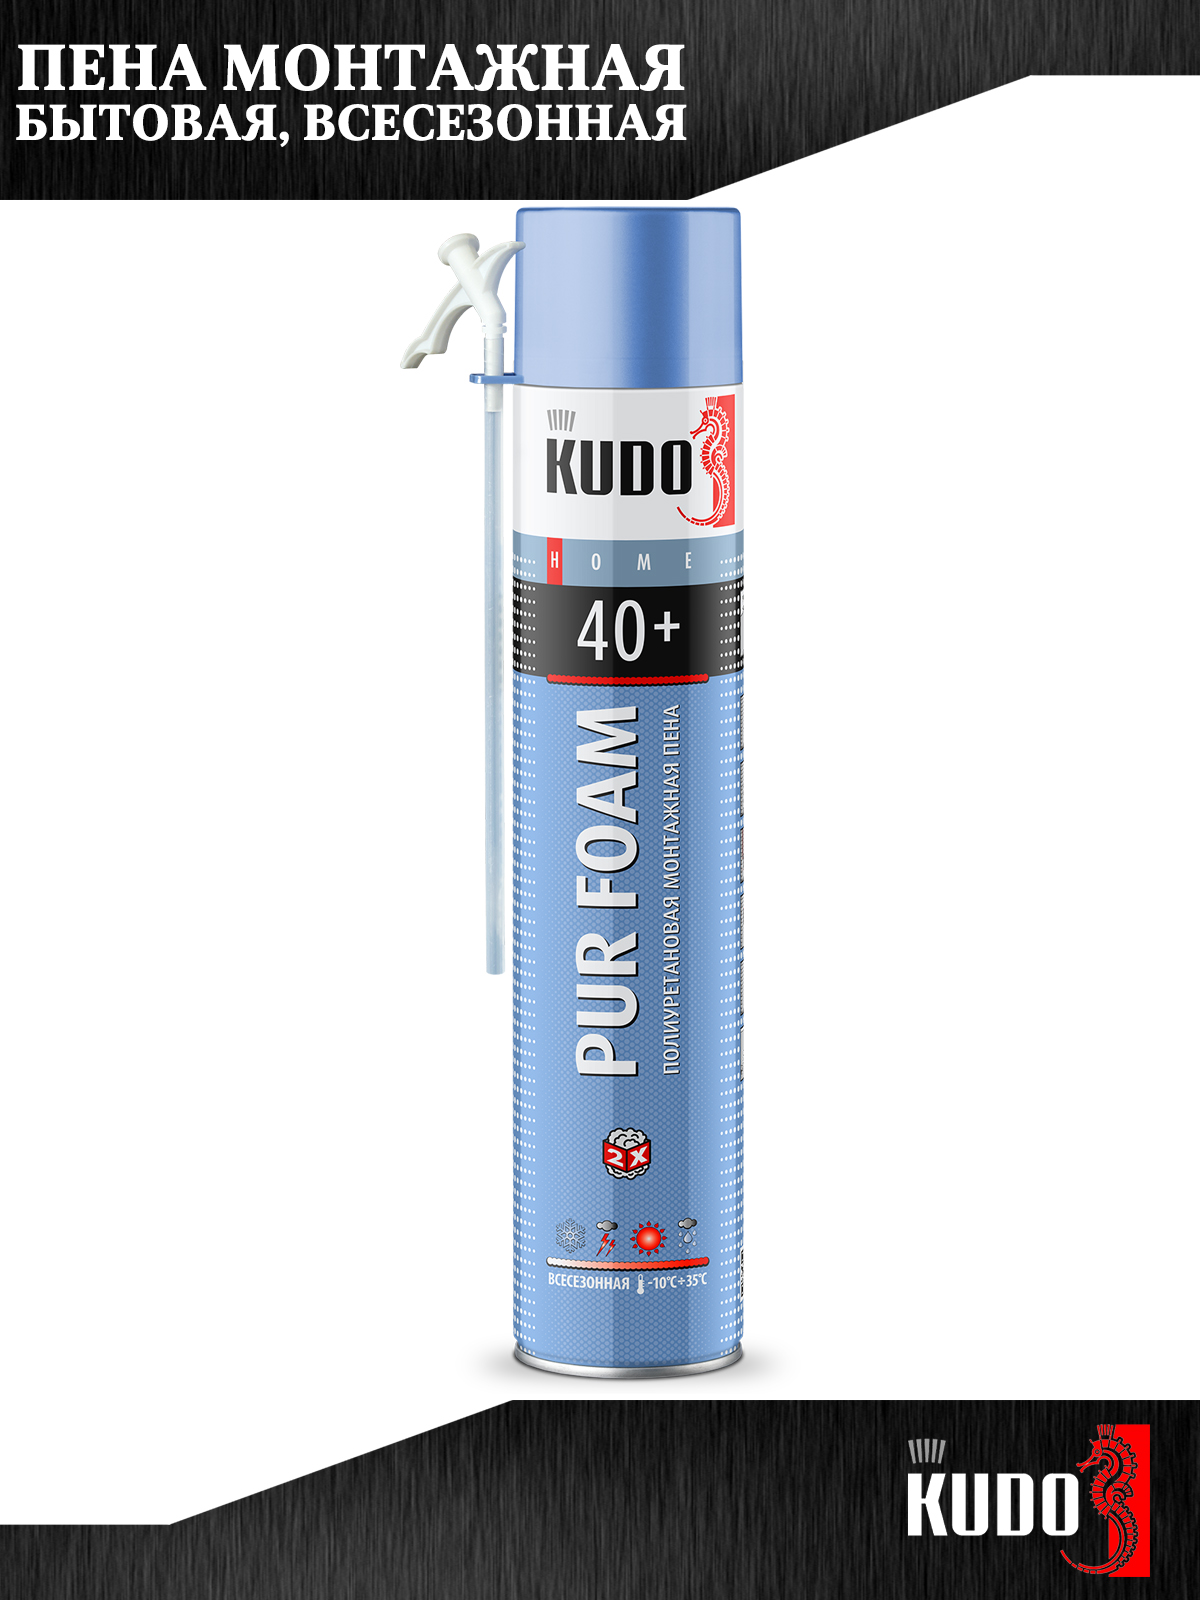 Монтажная пена KUDO PUR FOAM 40+, полиуретановая, всесезонная, до 40 л., 1000 мл, 2 шт.